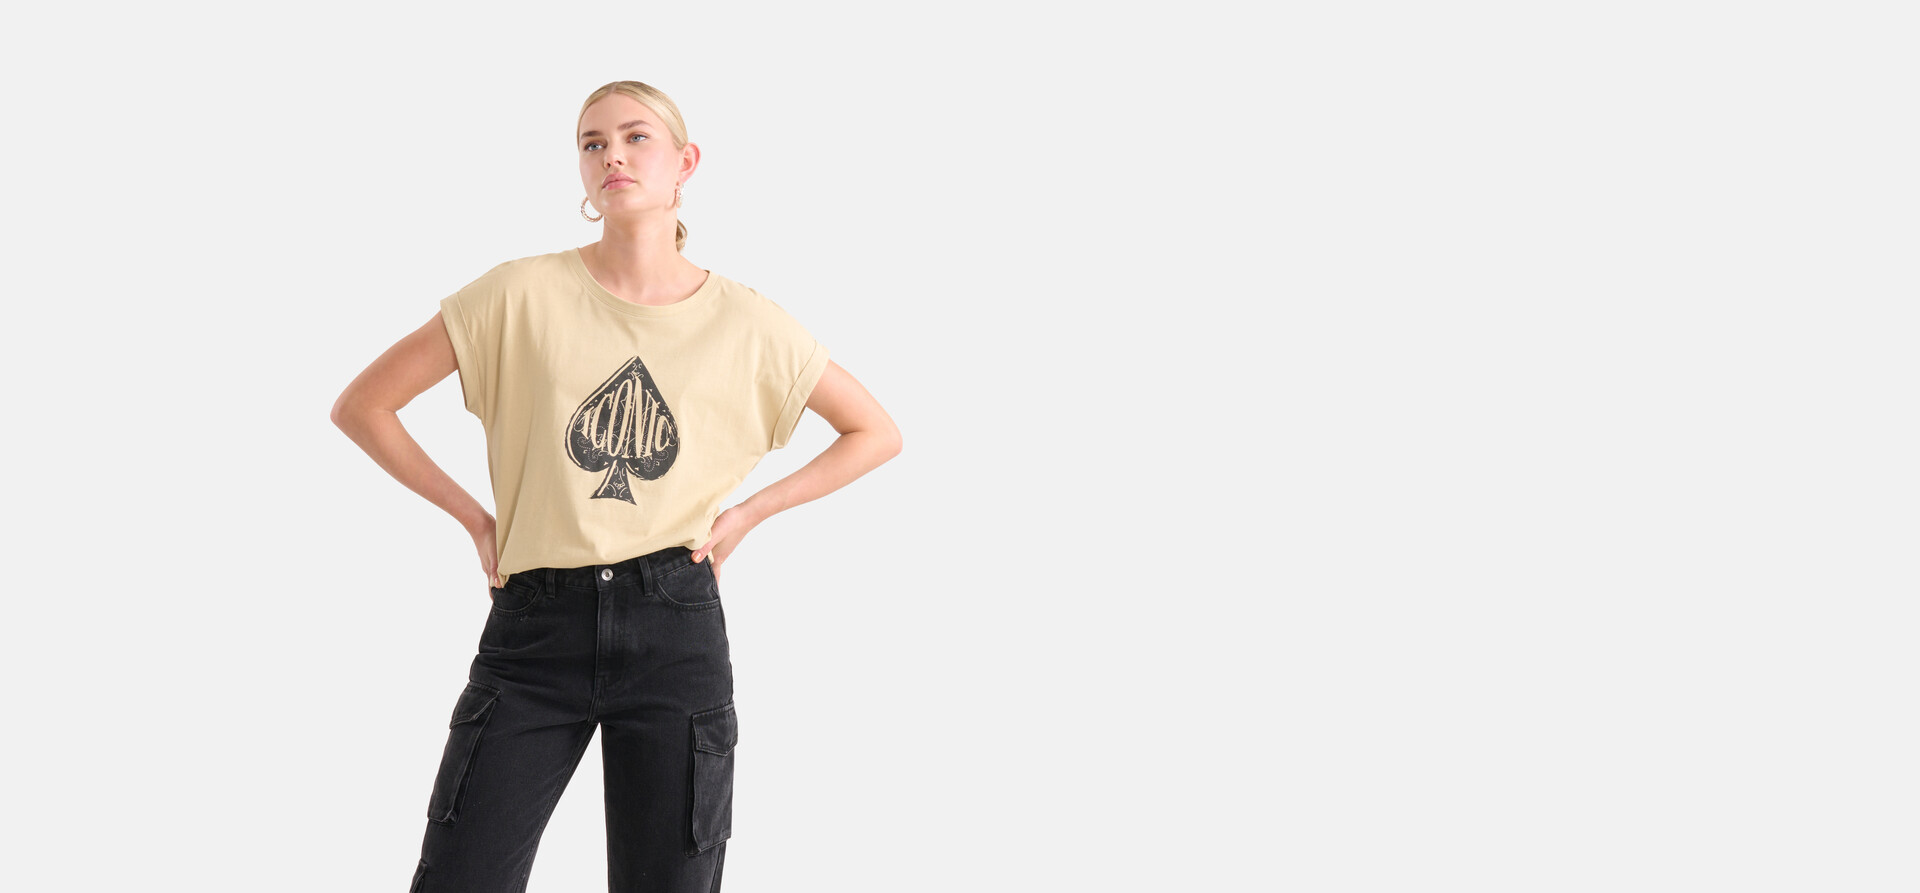 Artwork T-shirt Beige SHOEBY WOMEN